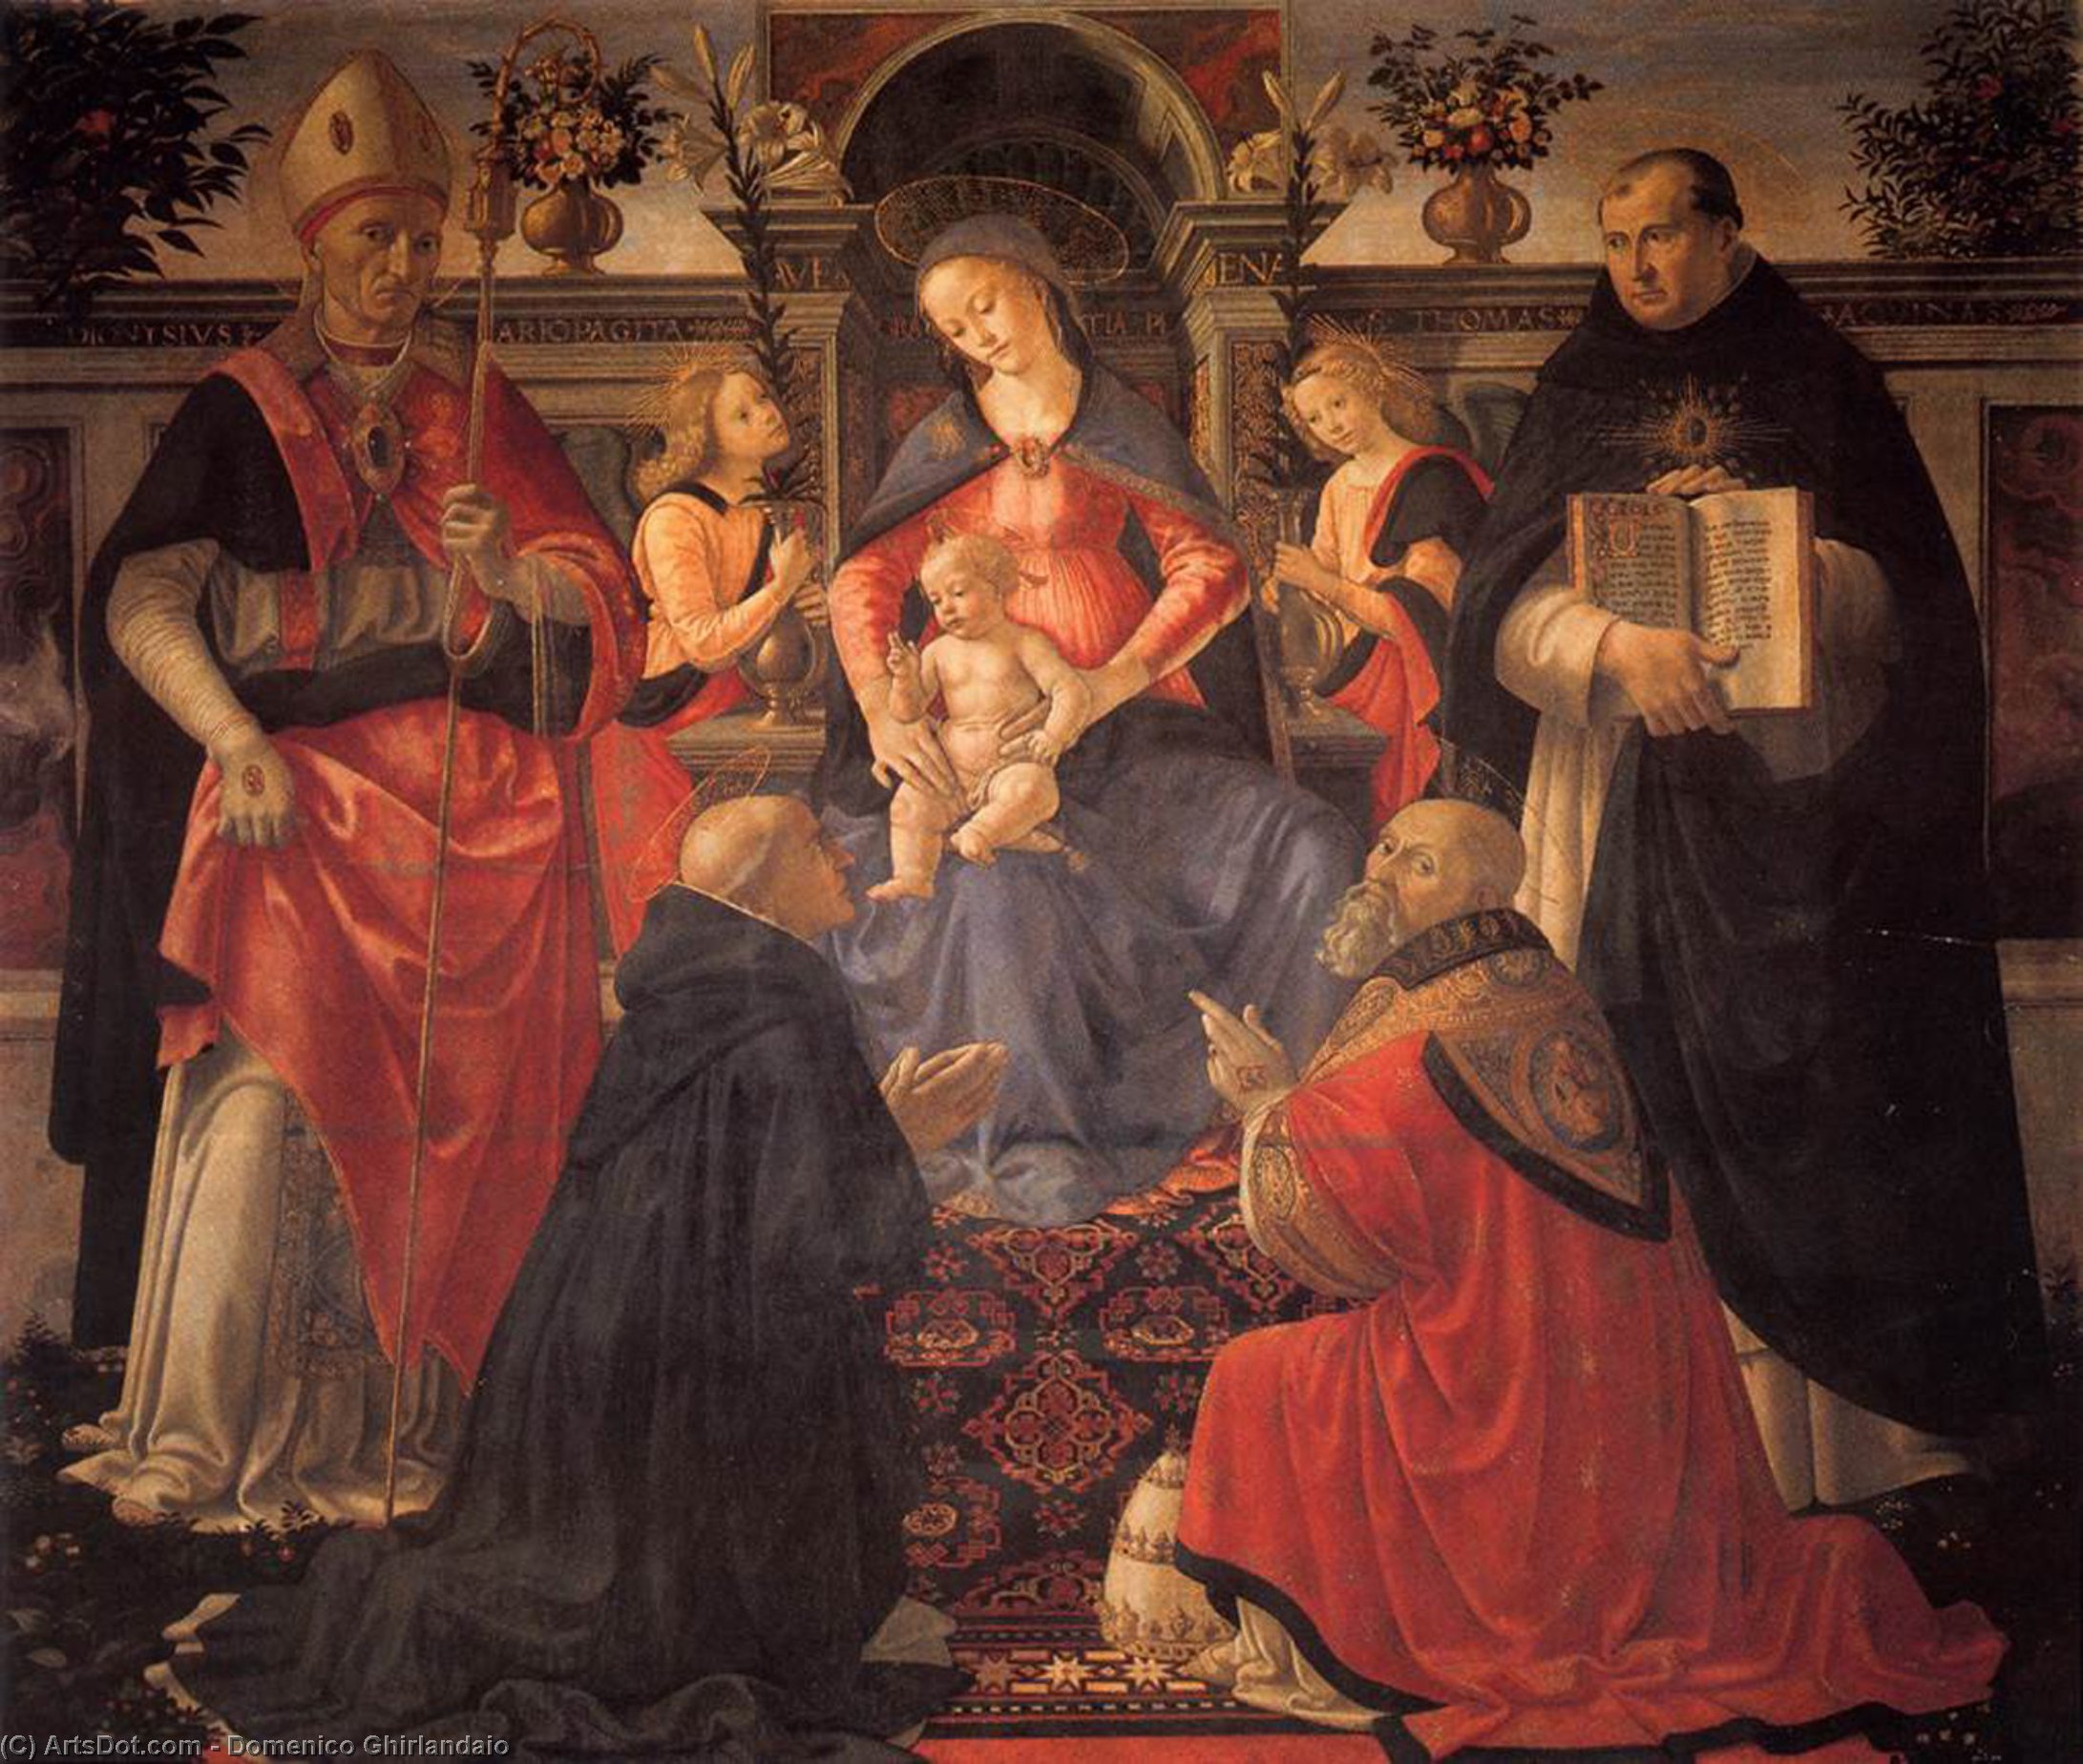 WikiOO.org – 美術百科全書 - 繪畫，作品 Domenico Ghirlandaio - 麦当娜和儿童登基  之间  天使  和  圣人